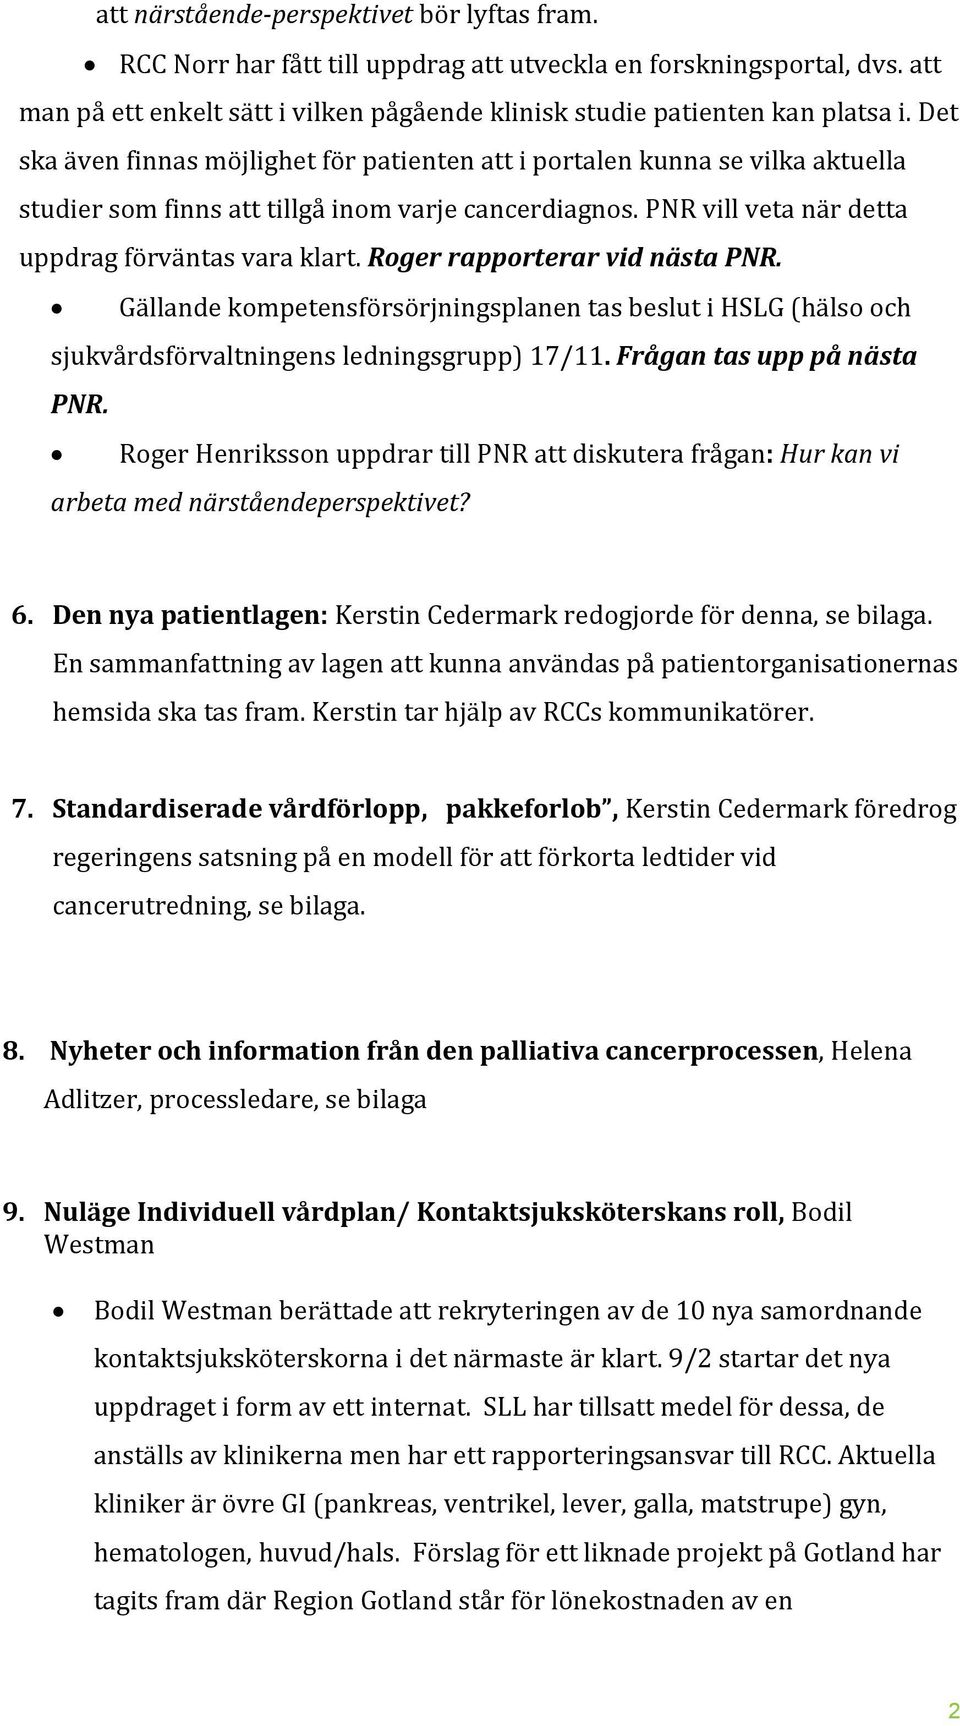 Roger rapporterar vid nästa PNR. Gällande kompetensförsörjningsplanen tas beslut i HSLG (hälso och sjukvårdsförvaltningens ledningsgrupp) 17/11. Frågan tas upp på nästa PNR.